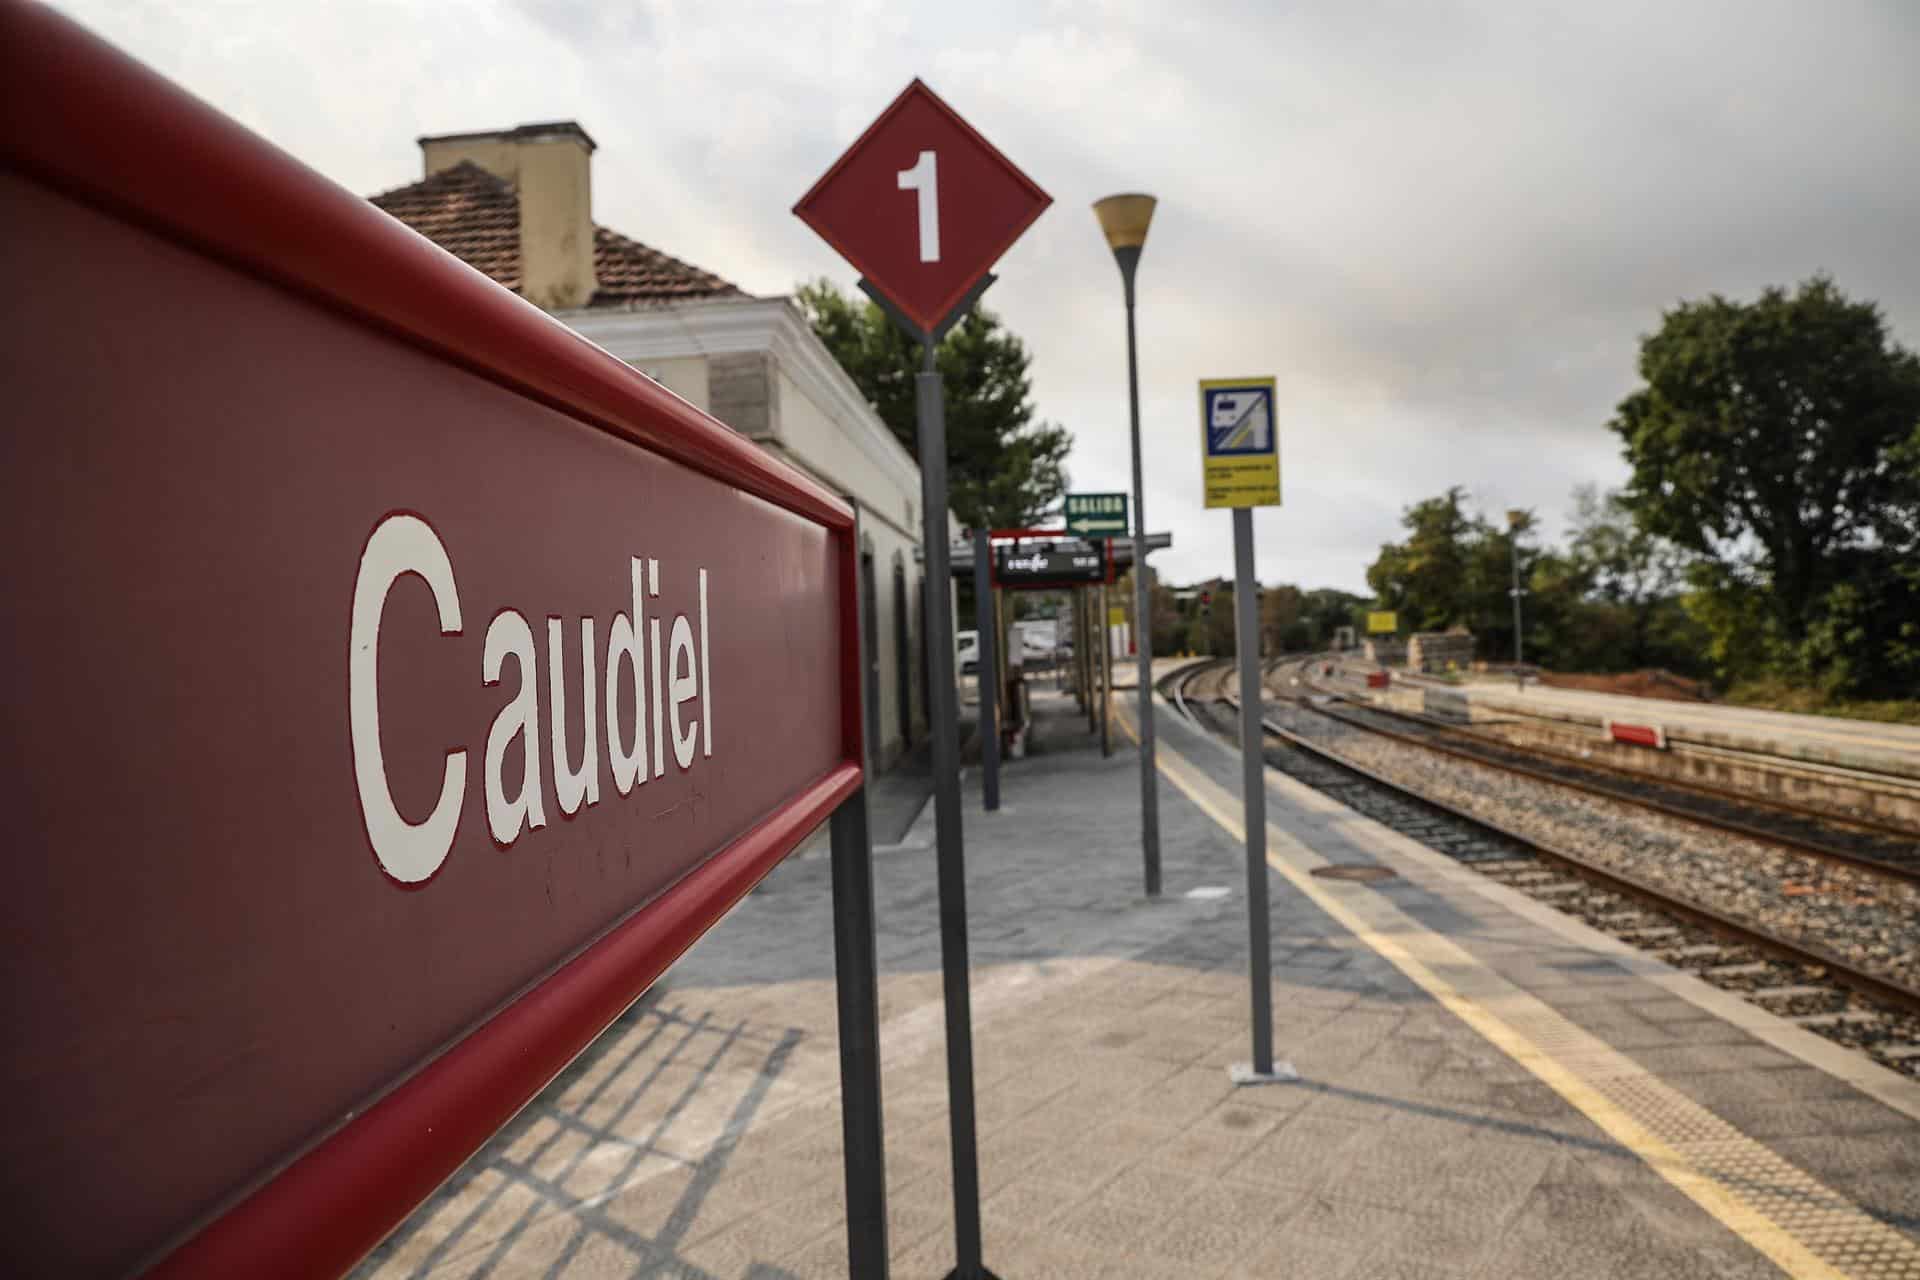 Puig espera un “informe riguroso” sobre las decisiones adoptadas en el incidente del tren